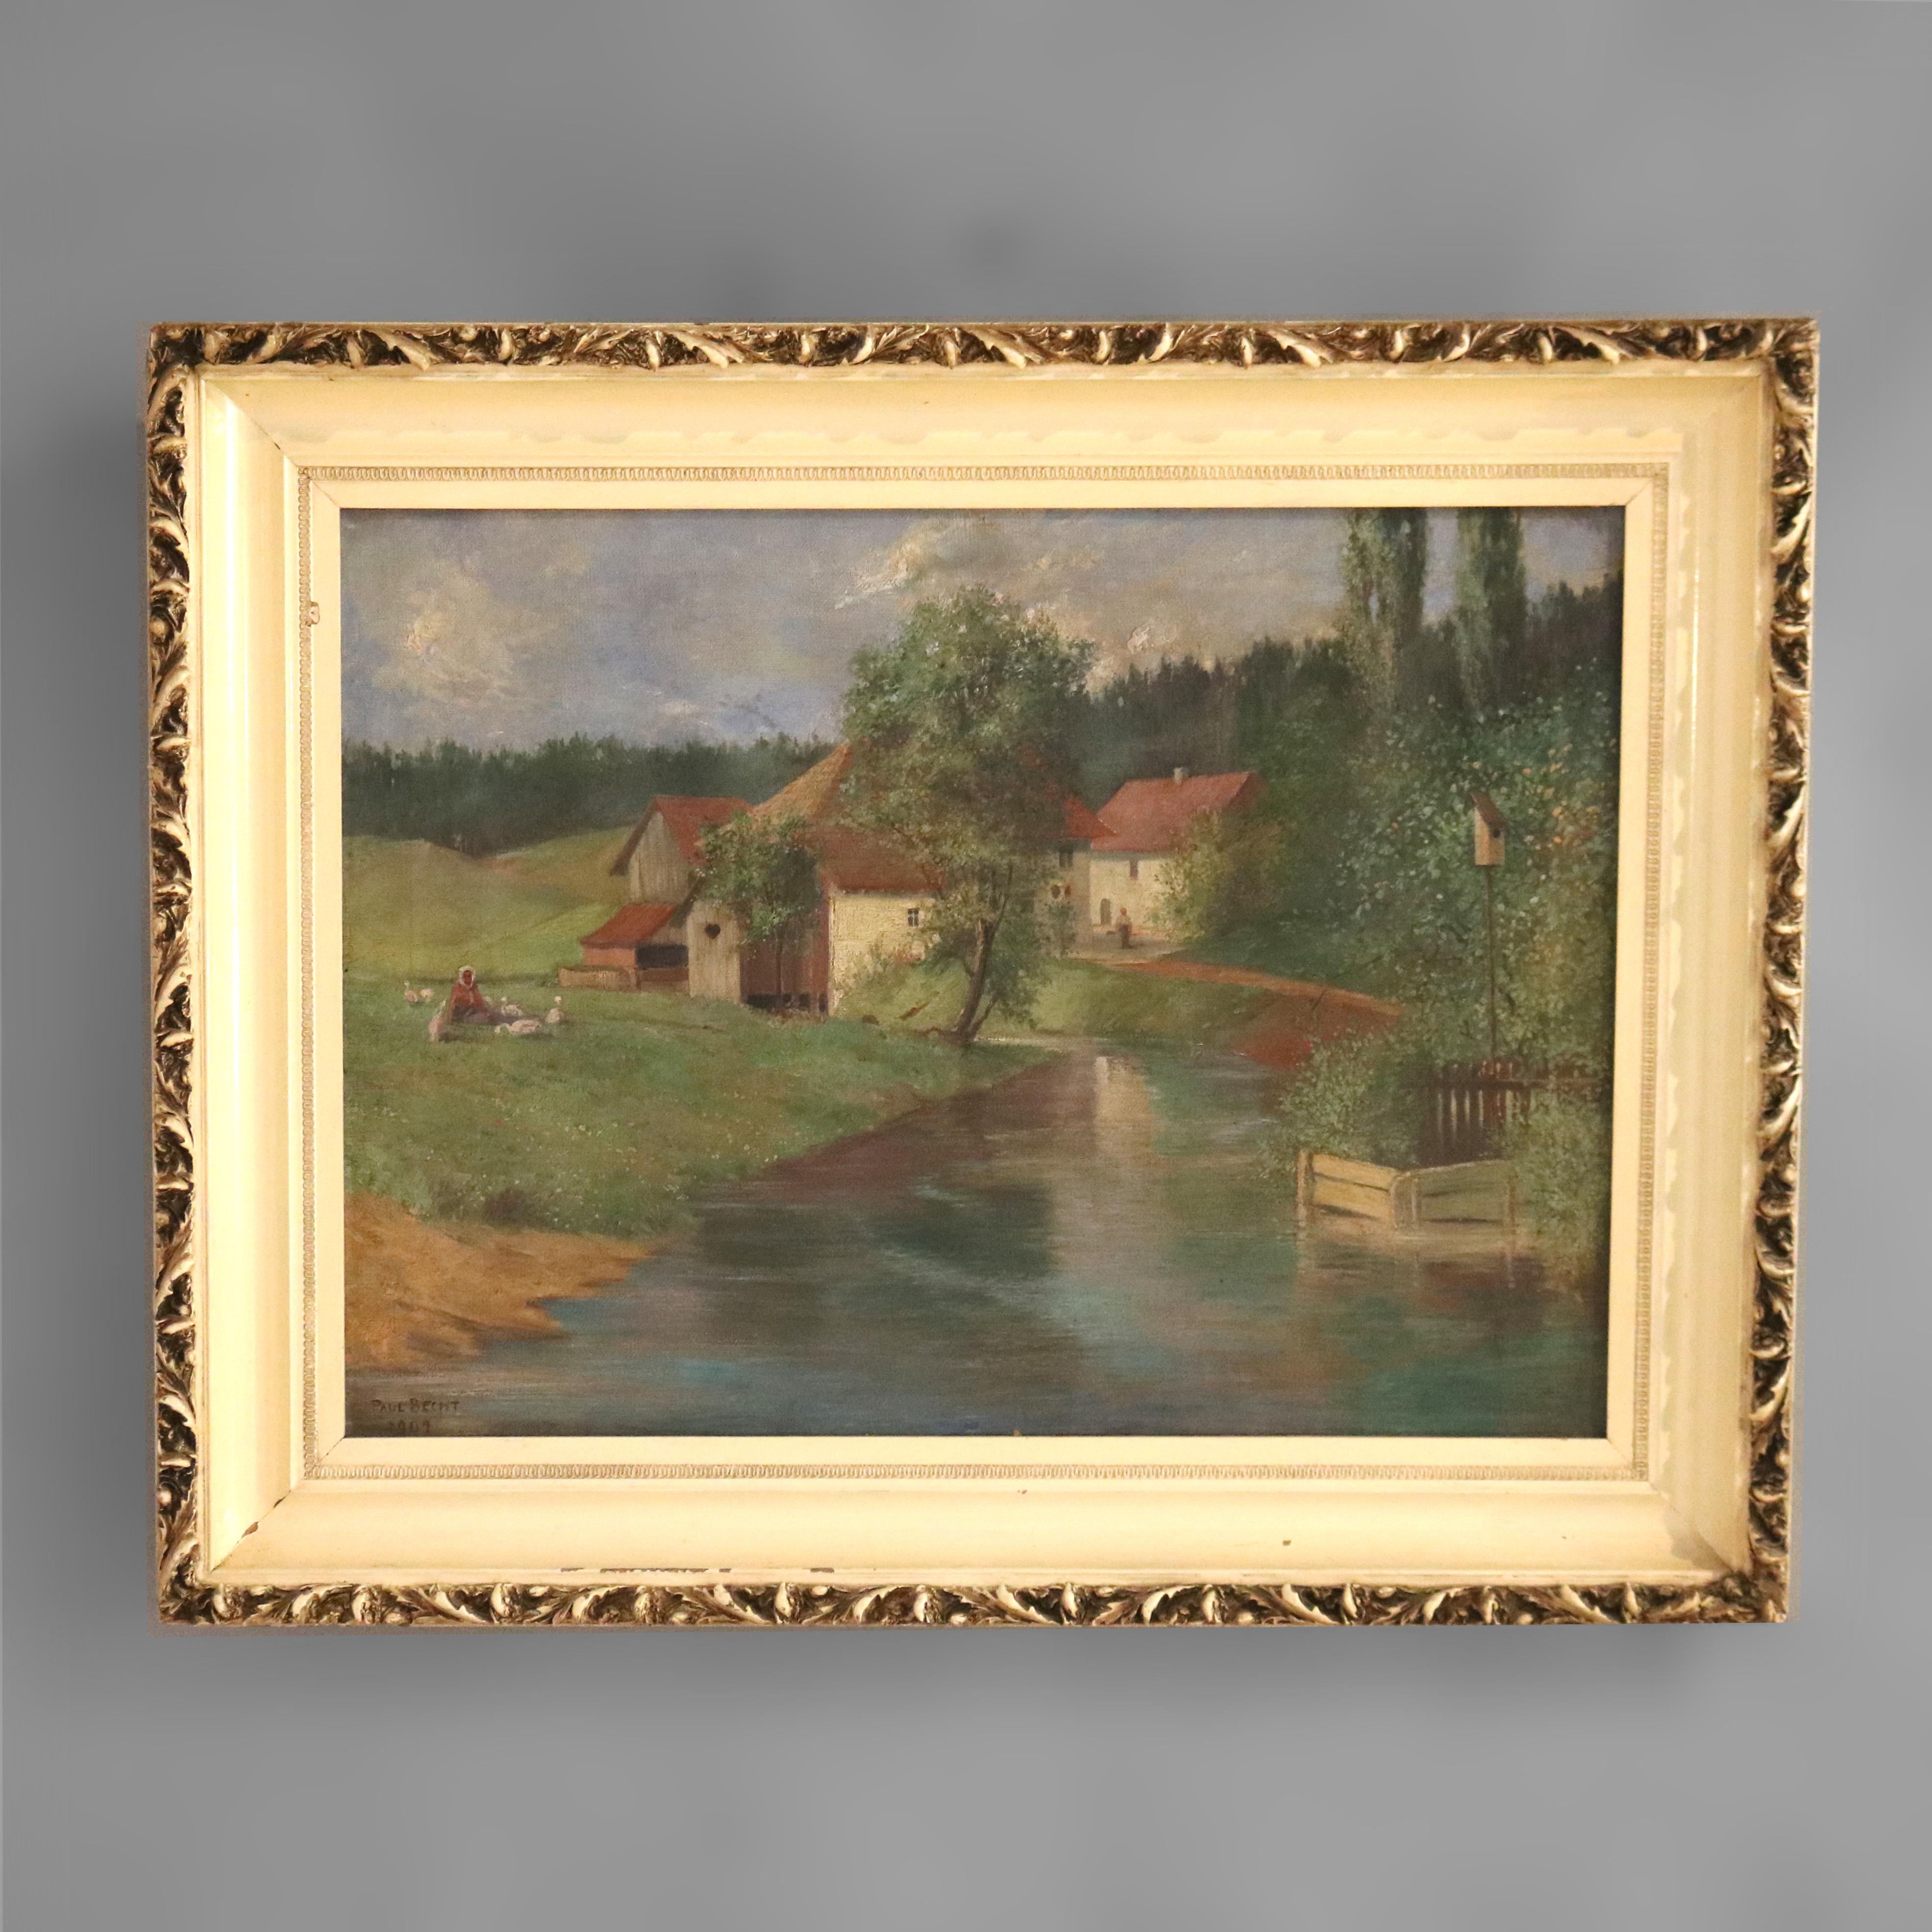 Ein antikes Gemälde von Brecht bietet Öl auf Leinwand Landschaft Bauernhof Szene mit Figuren, Enten, Strukturen und Strom,; Künstler signiert wie fotografiert; in Paket vergoldeten Rahmen sitzen; um 1907

Maße - 25,5 